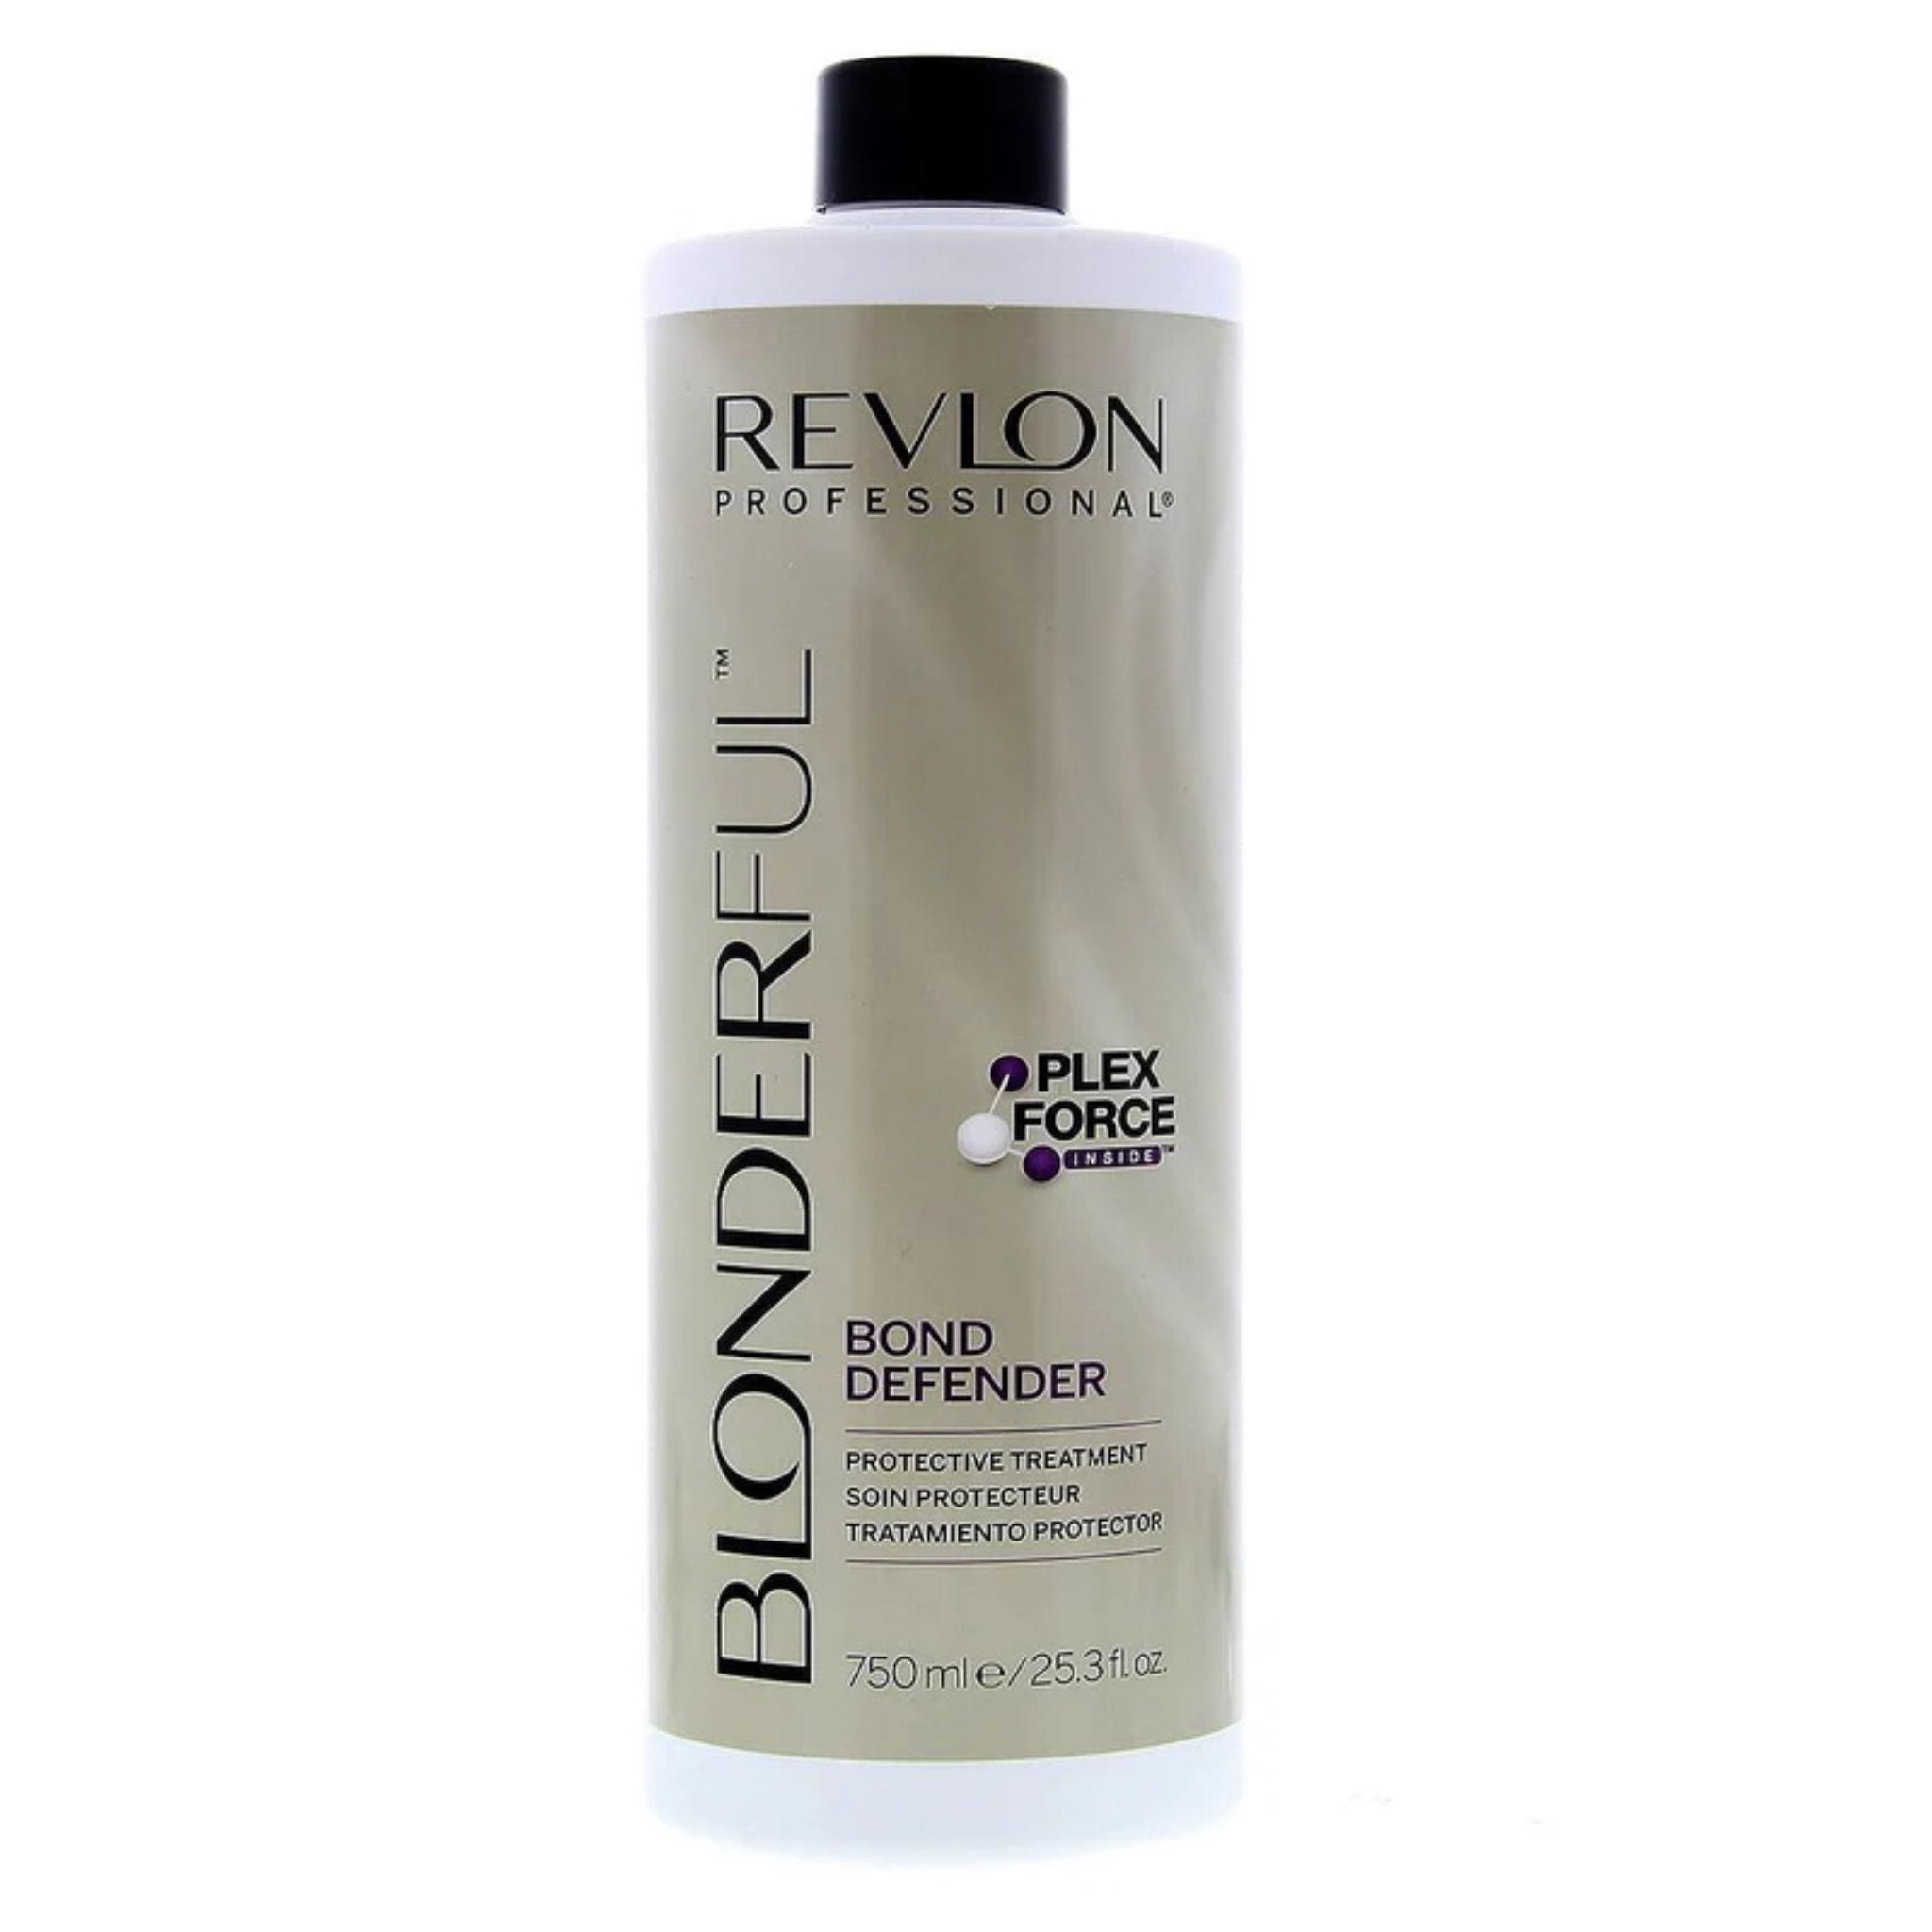 Revlon. Blonderful Soin Protecteur Bond Defender (Étape 2) - 750ml - Concept C. Shop